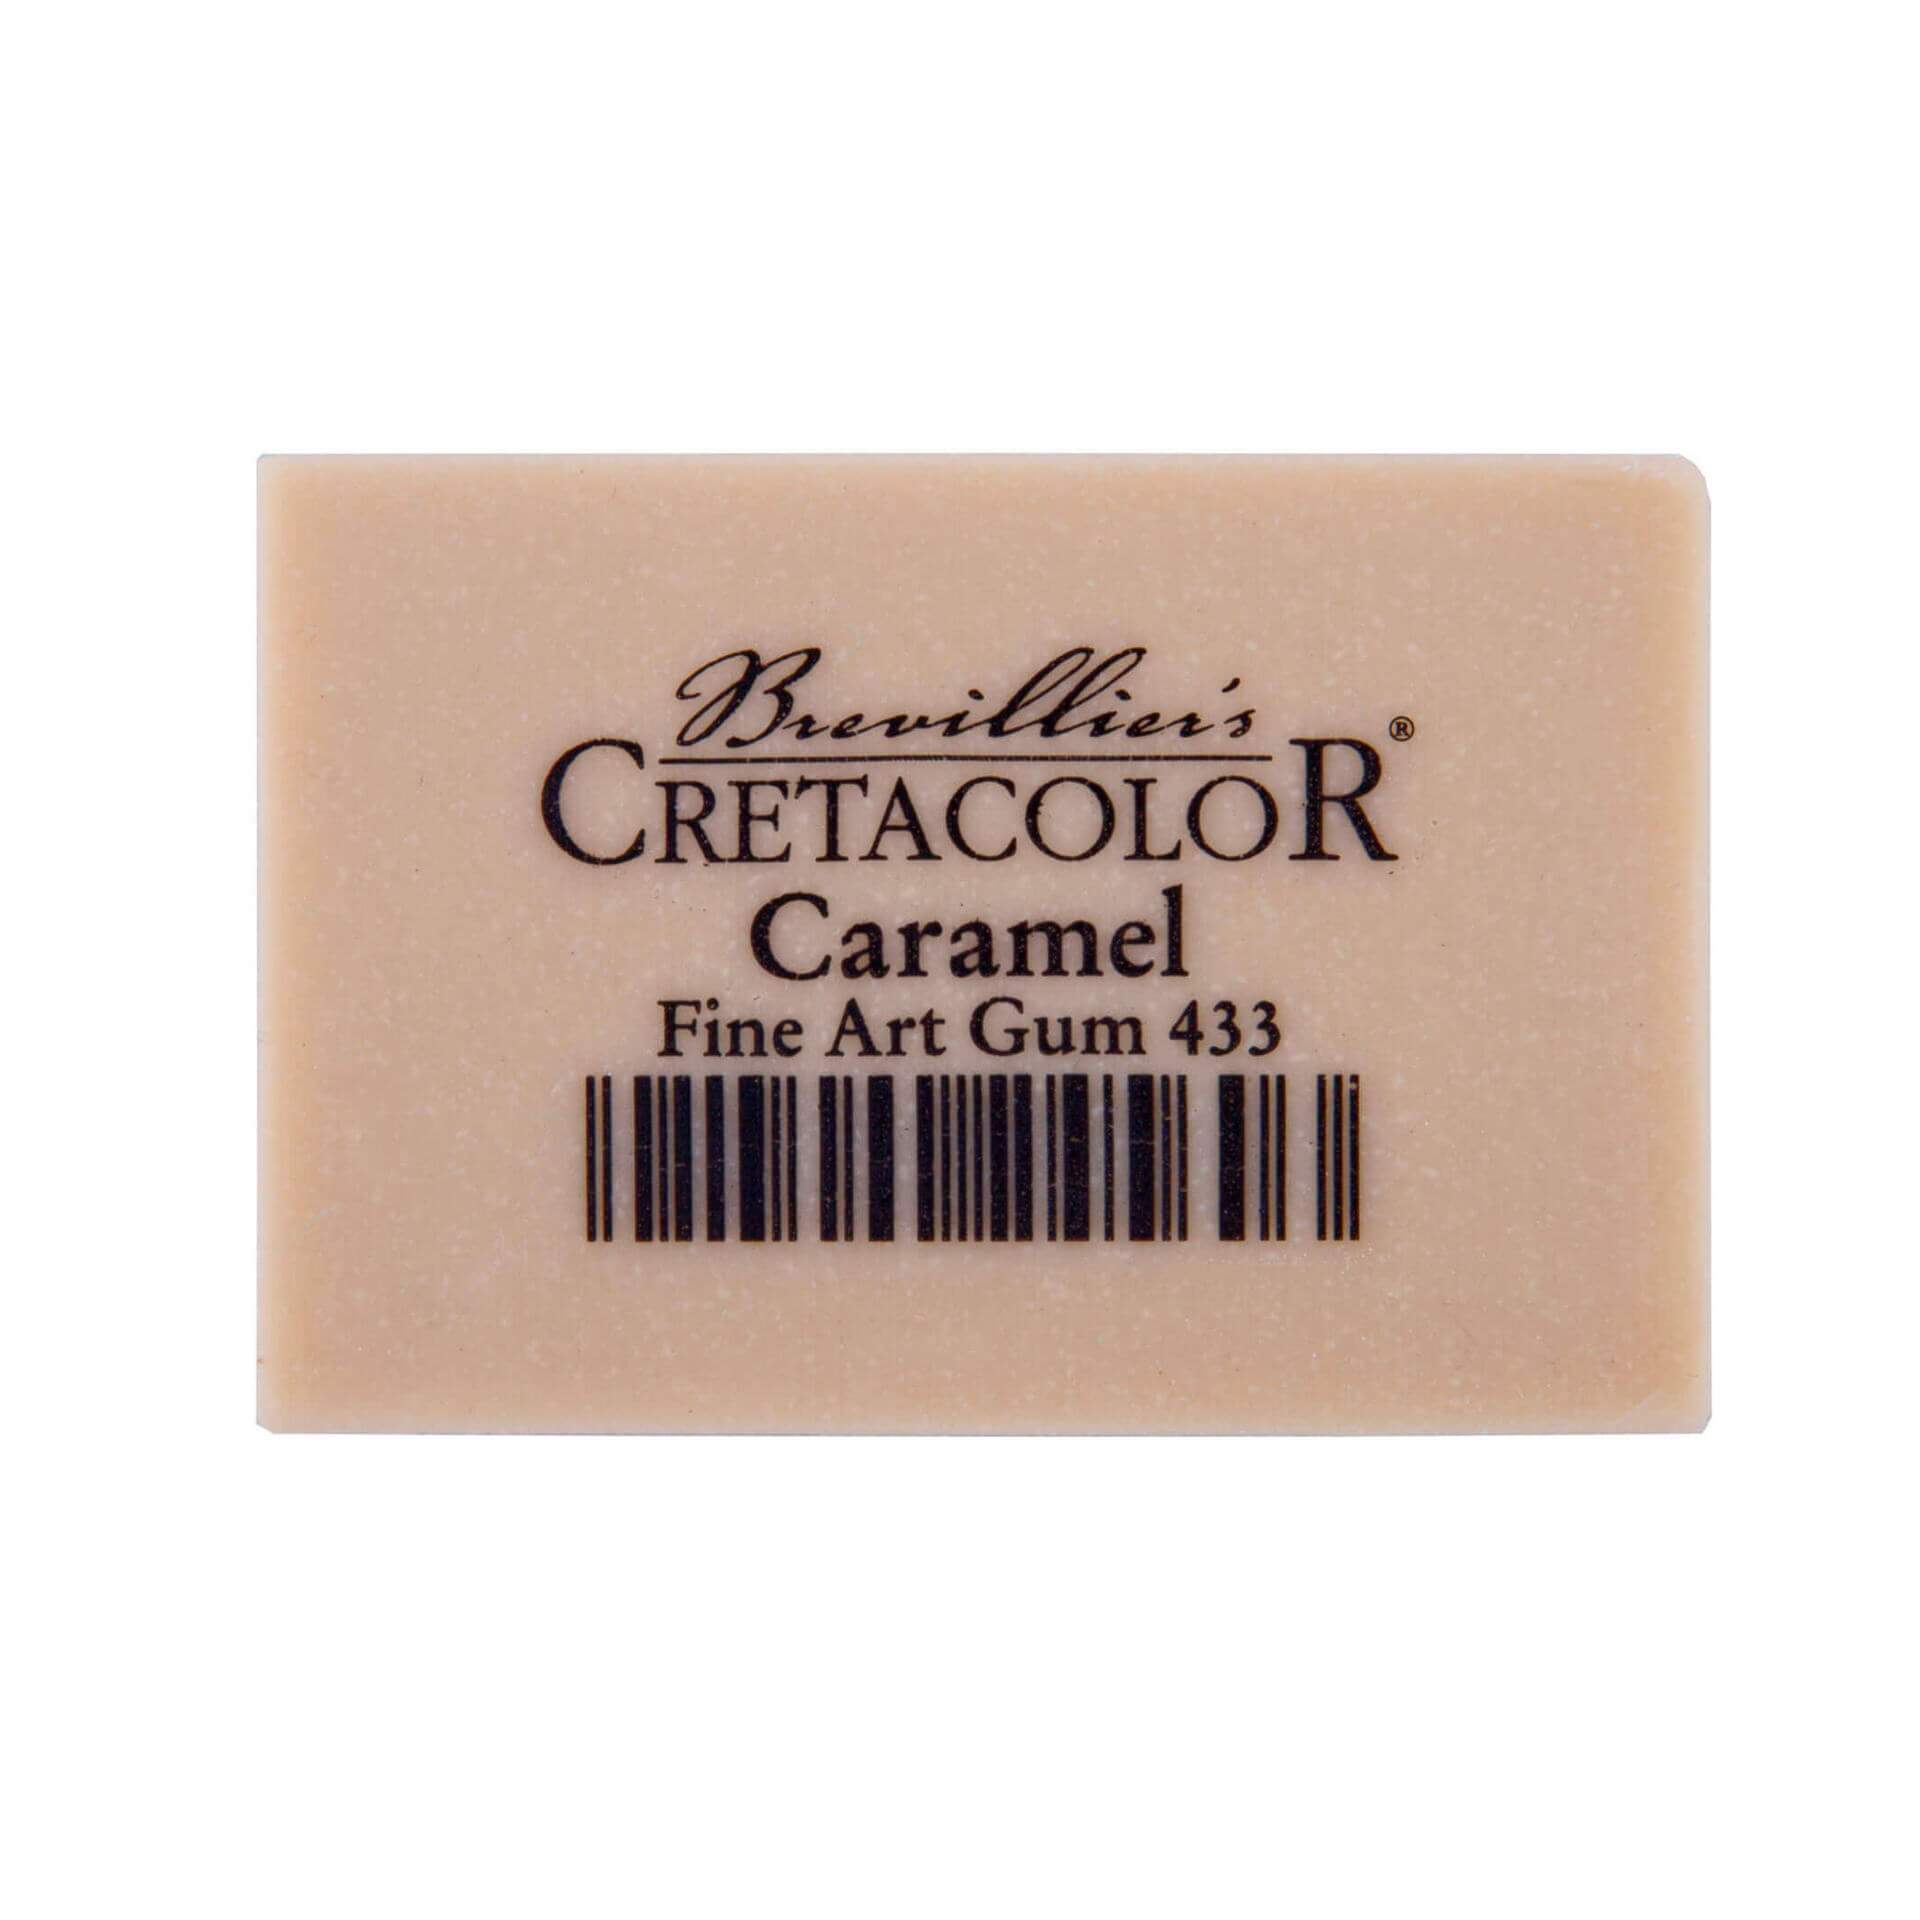 Cretacolor Caramel Fine Art Gum Eraser Single Piece